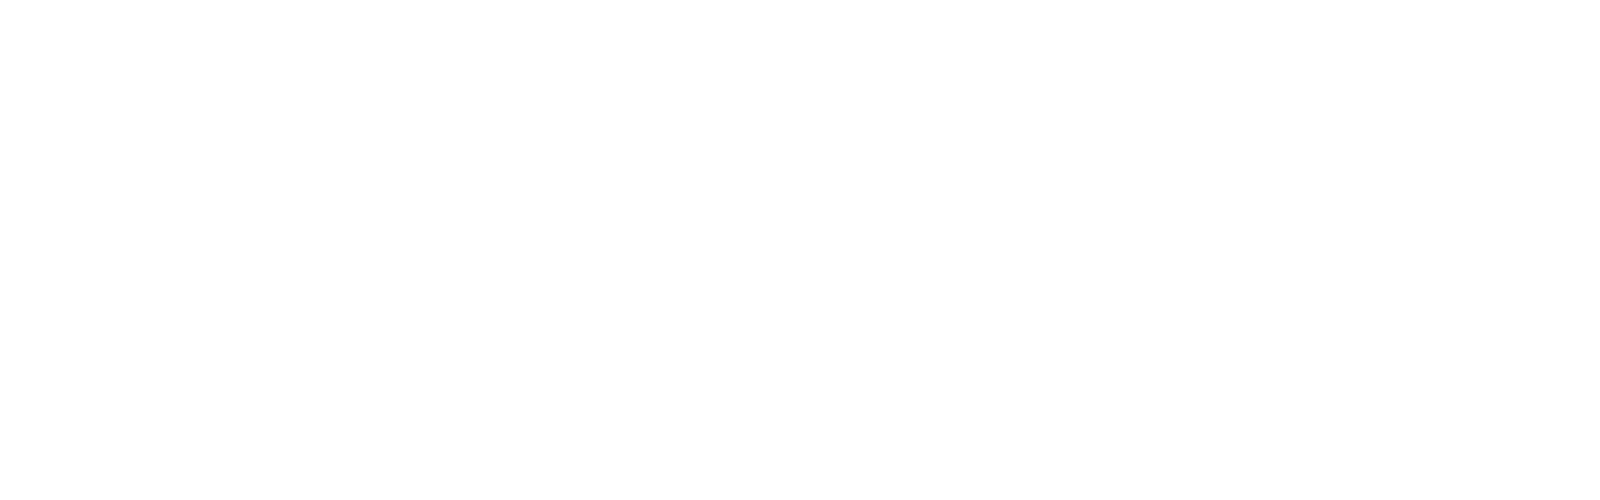 Radentscheid Würzburg